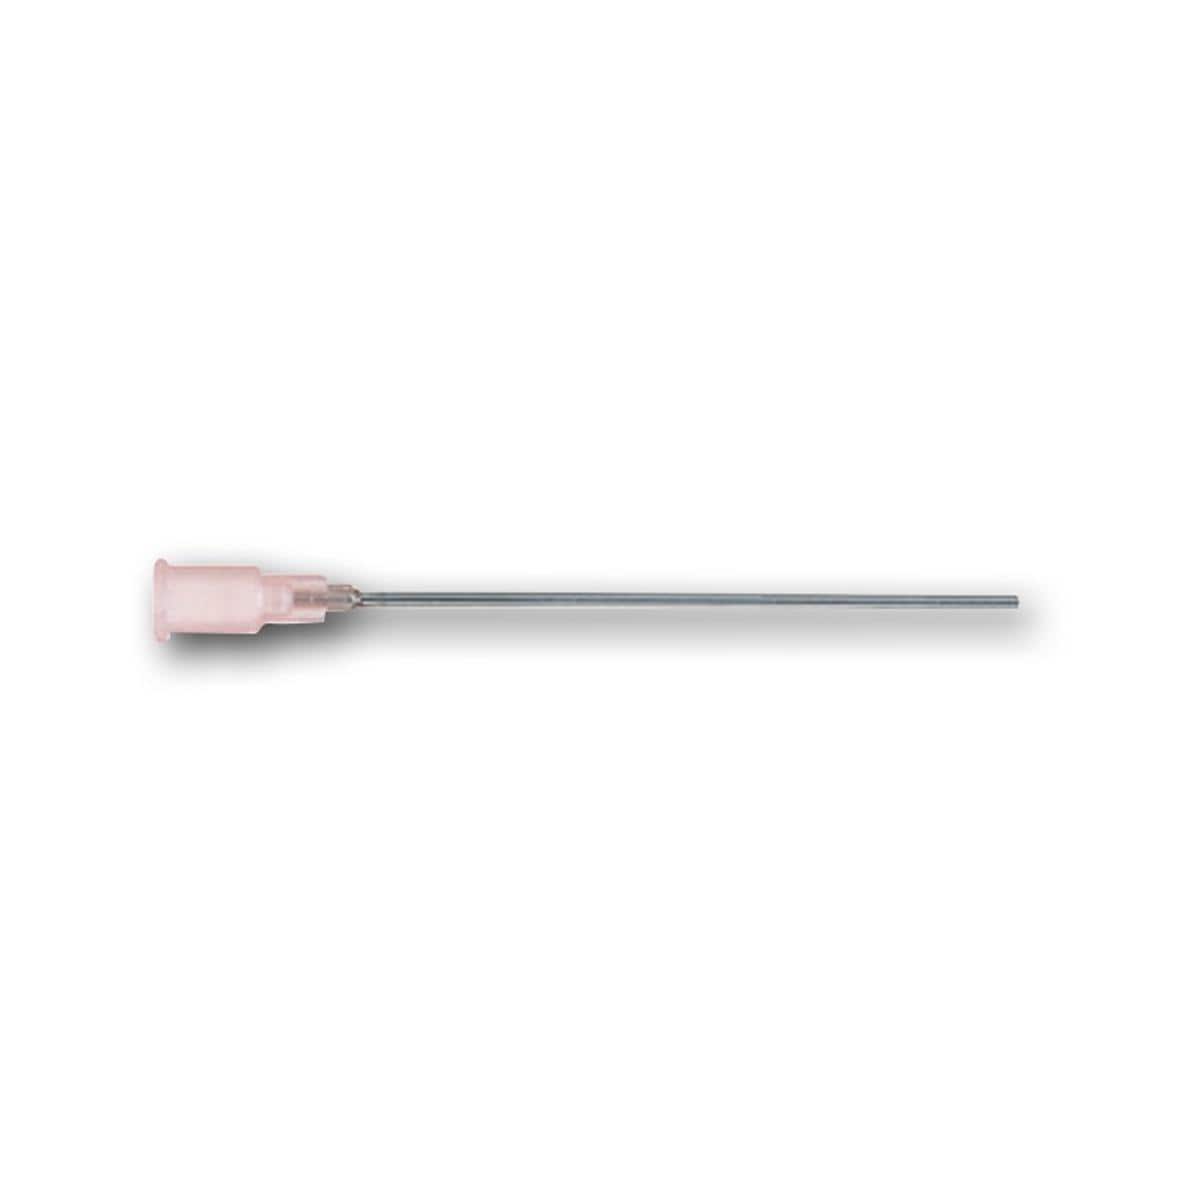 Sterican stompe naalden - Roze 18G, 1,2 x 40 mm - 100 stuks